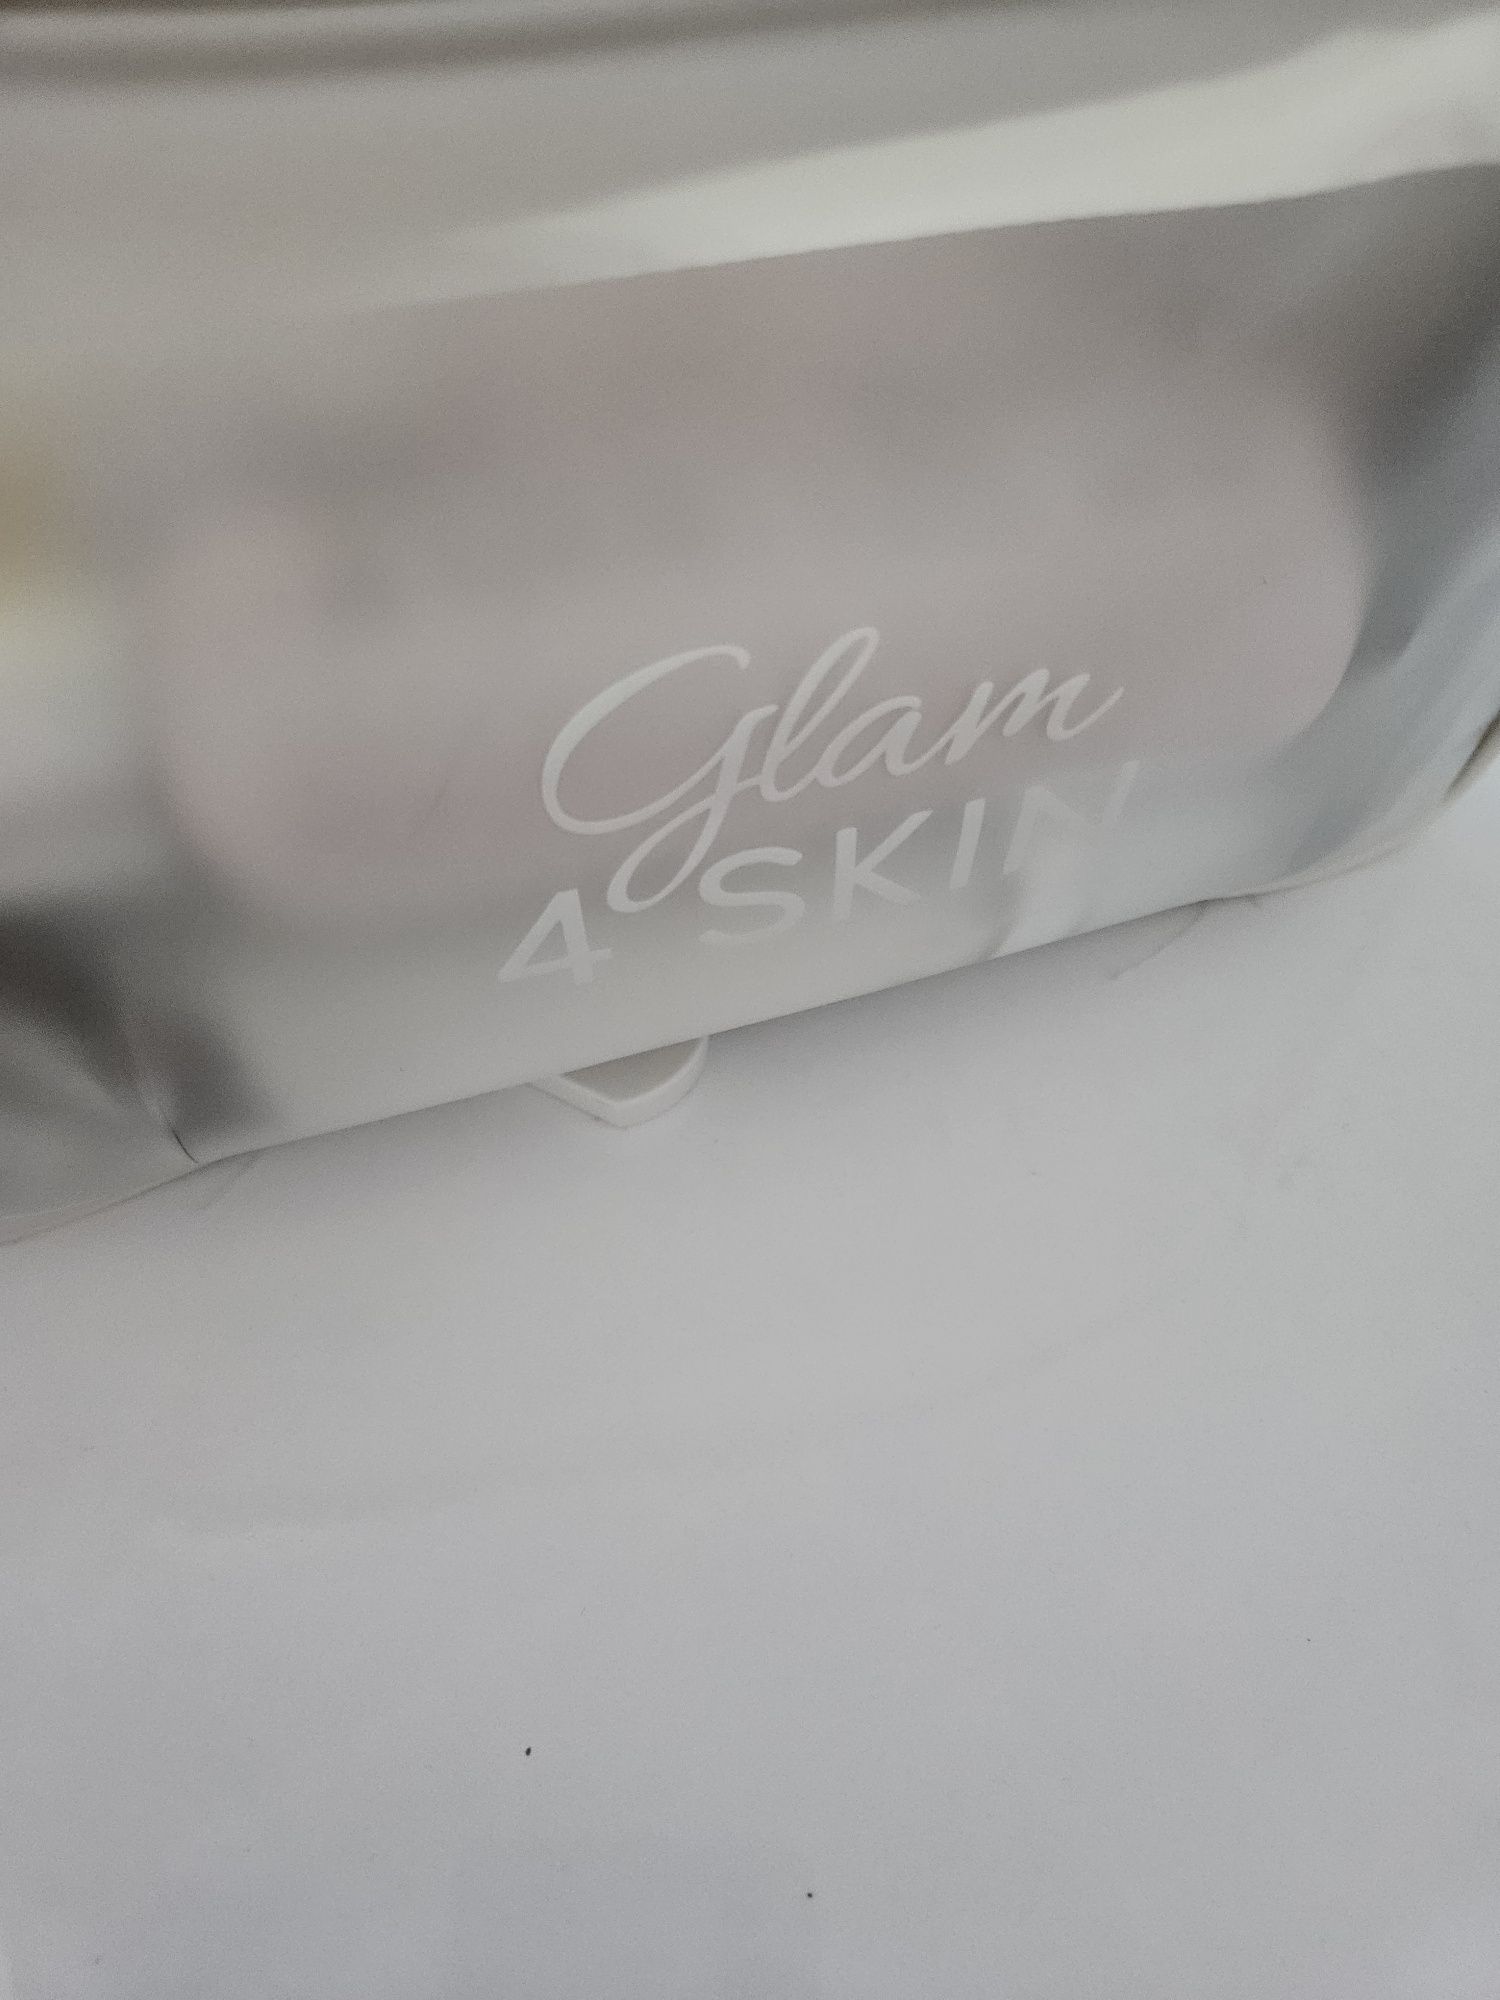 GlamSHOP/POJEMNA kosmetyczka Glam4SKIN/Edycja limitowana!!!